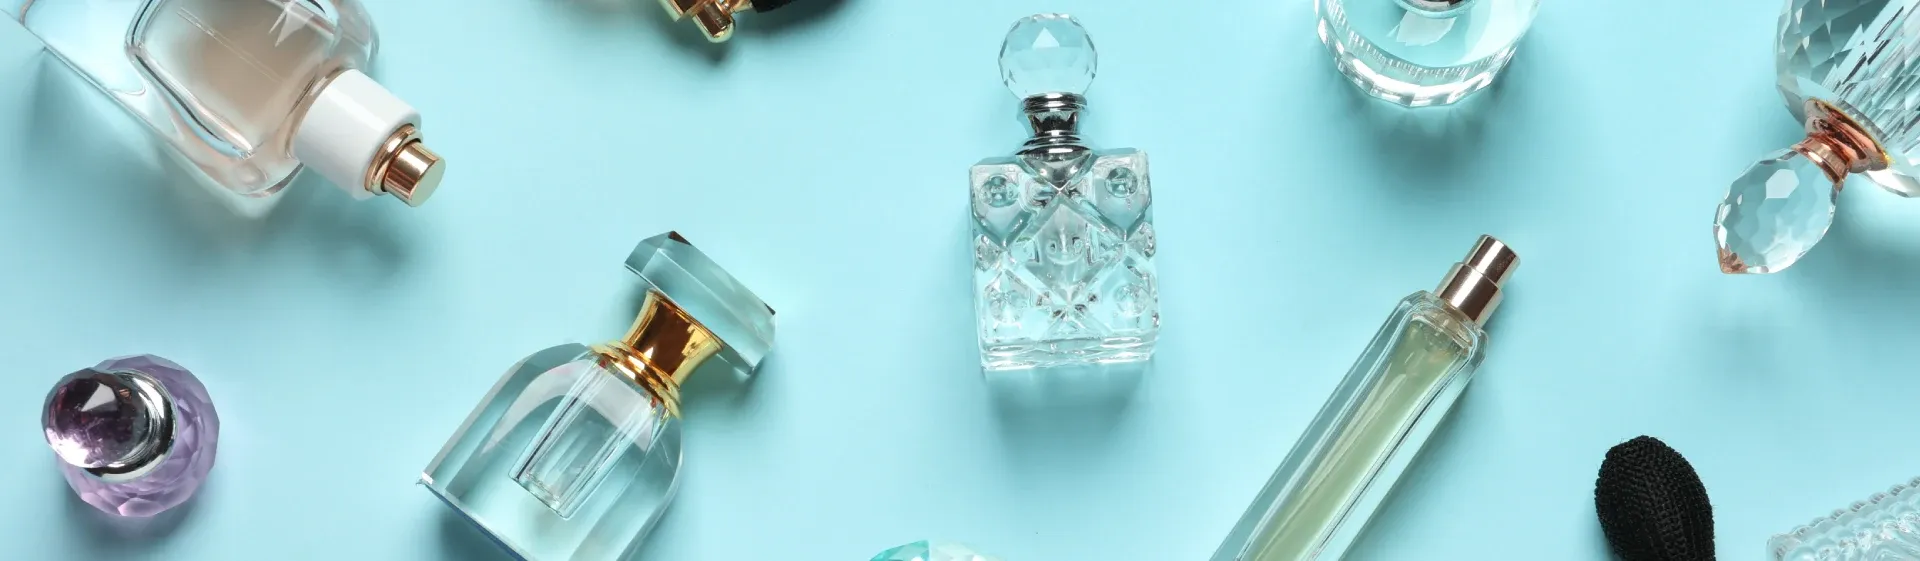 Perfumes importados baratos: 6 fragrâncias que cabem no bolso